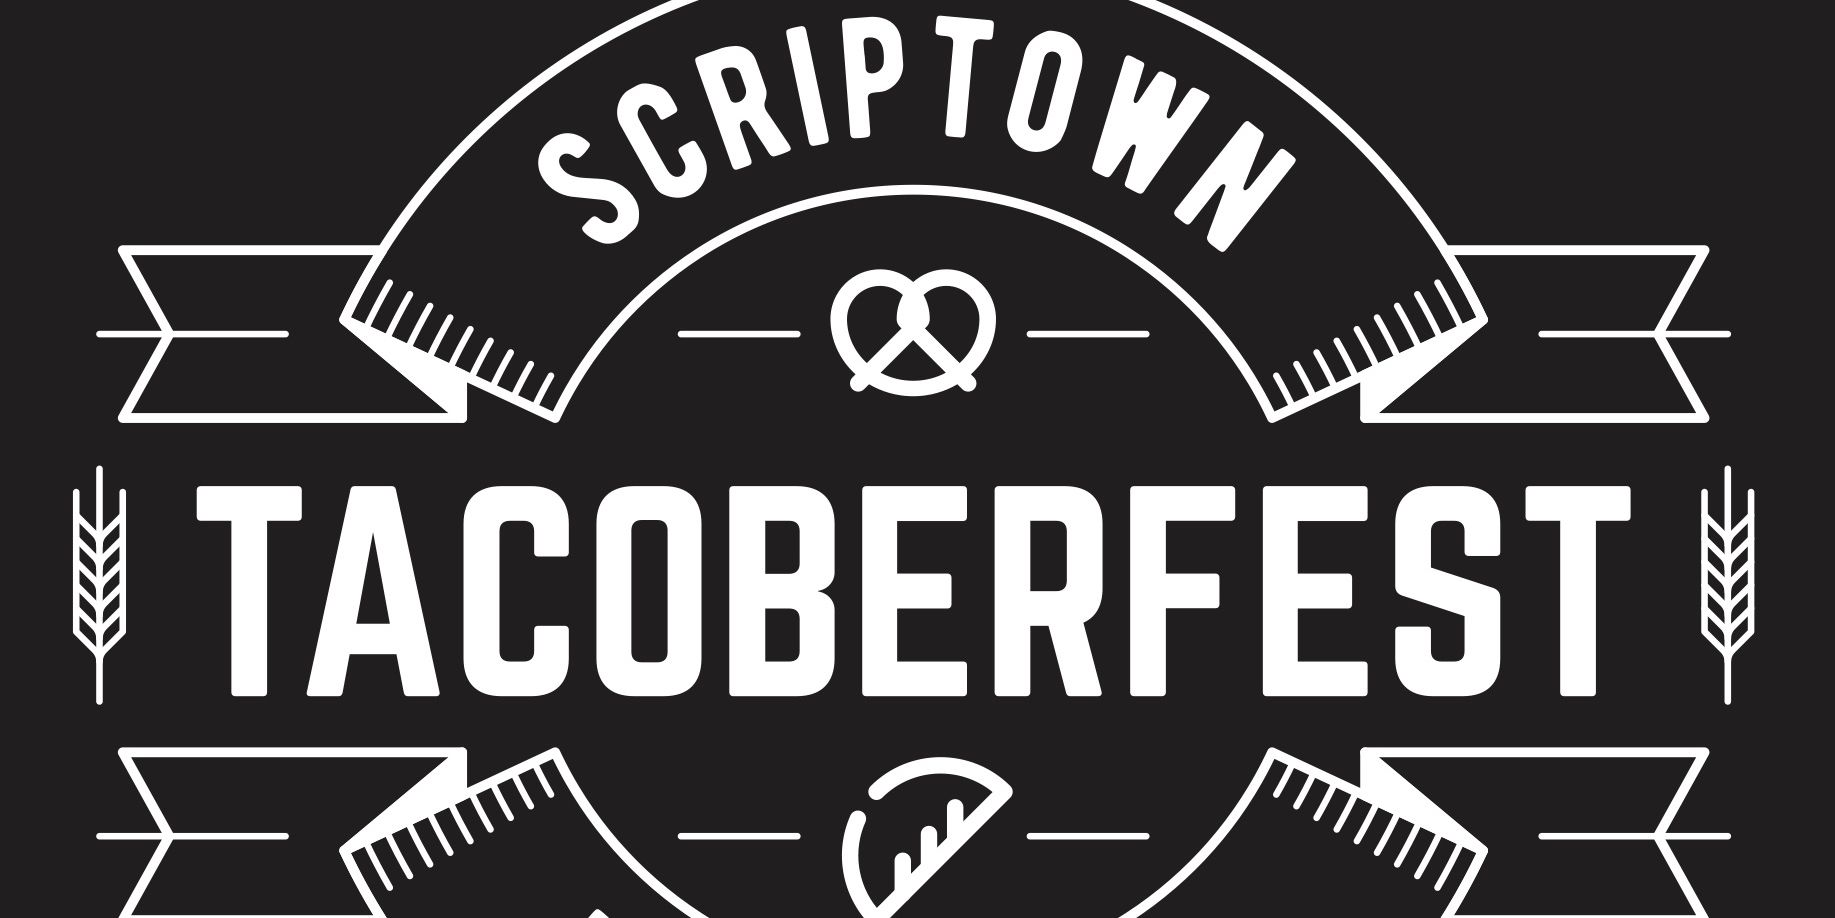 Tacoberfest 2021 promotional image